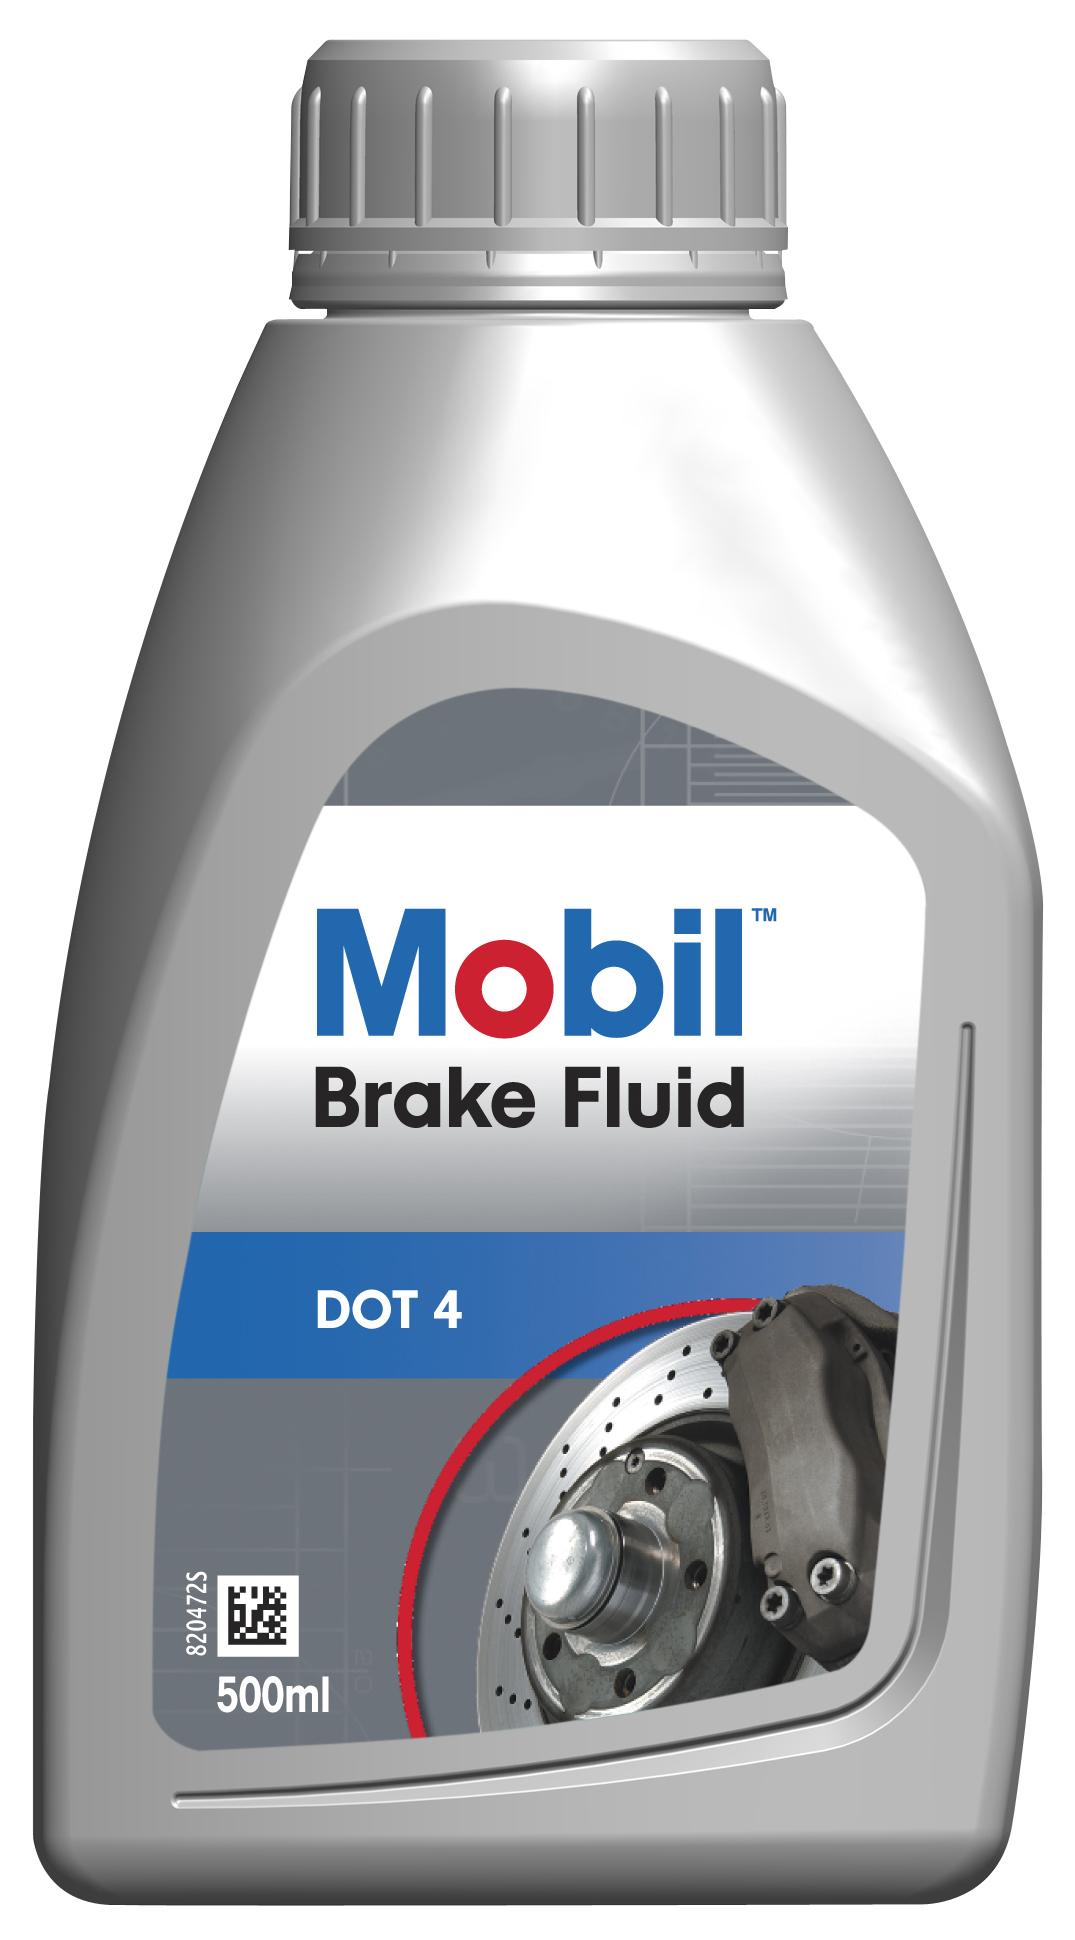 Mobil Brake Fluid Dot 4